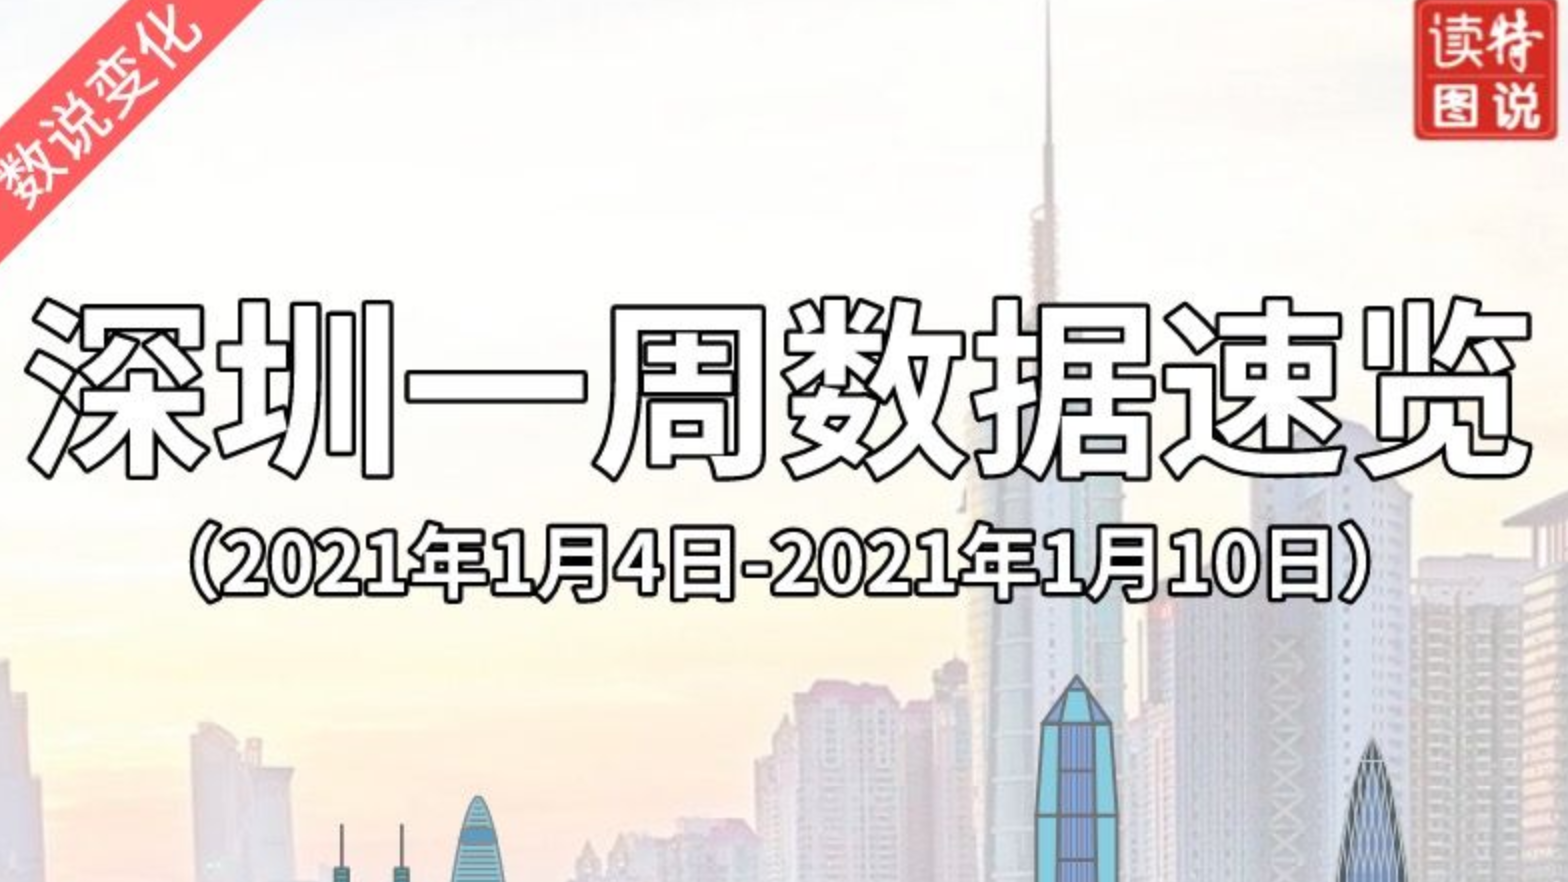 数说变化 | 深圳一周数据速览（2021年1月4日—2021年1月10日）